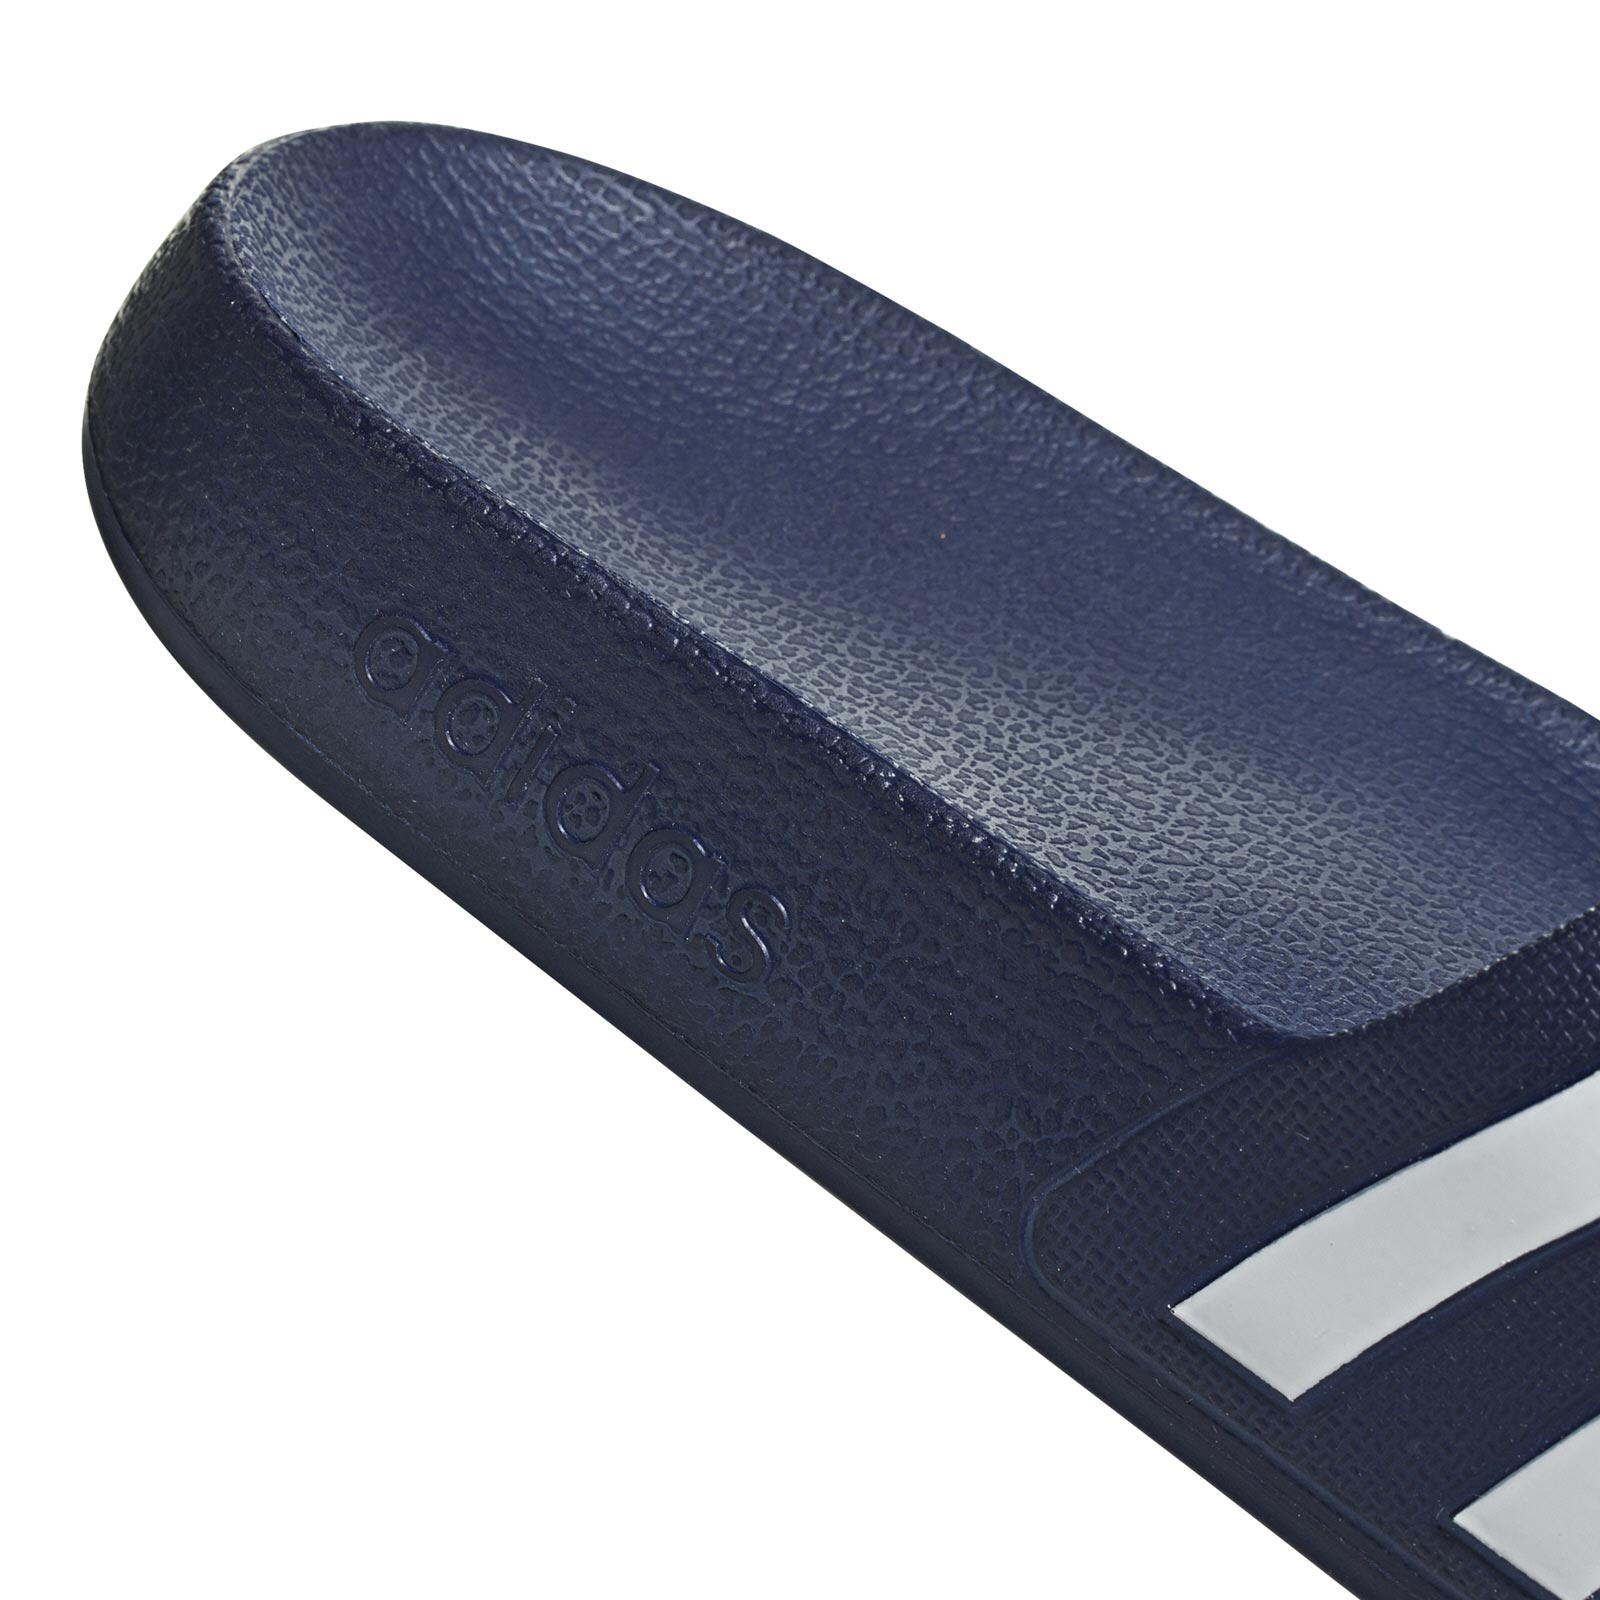 adidas Adilette Aqua Sandal Mens Slides